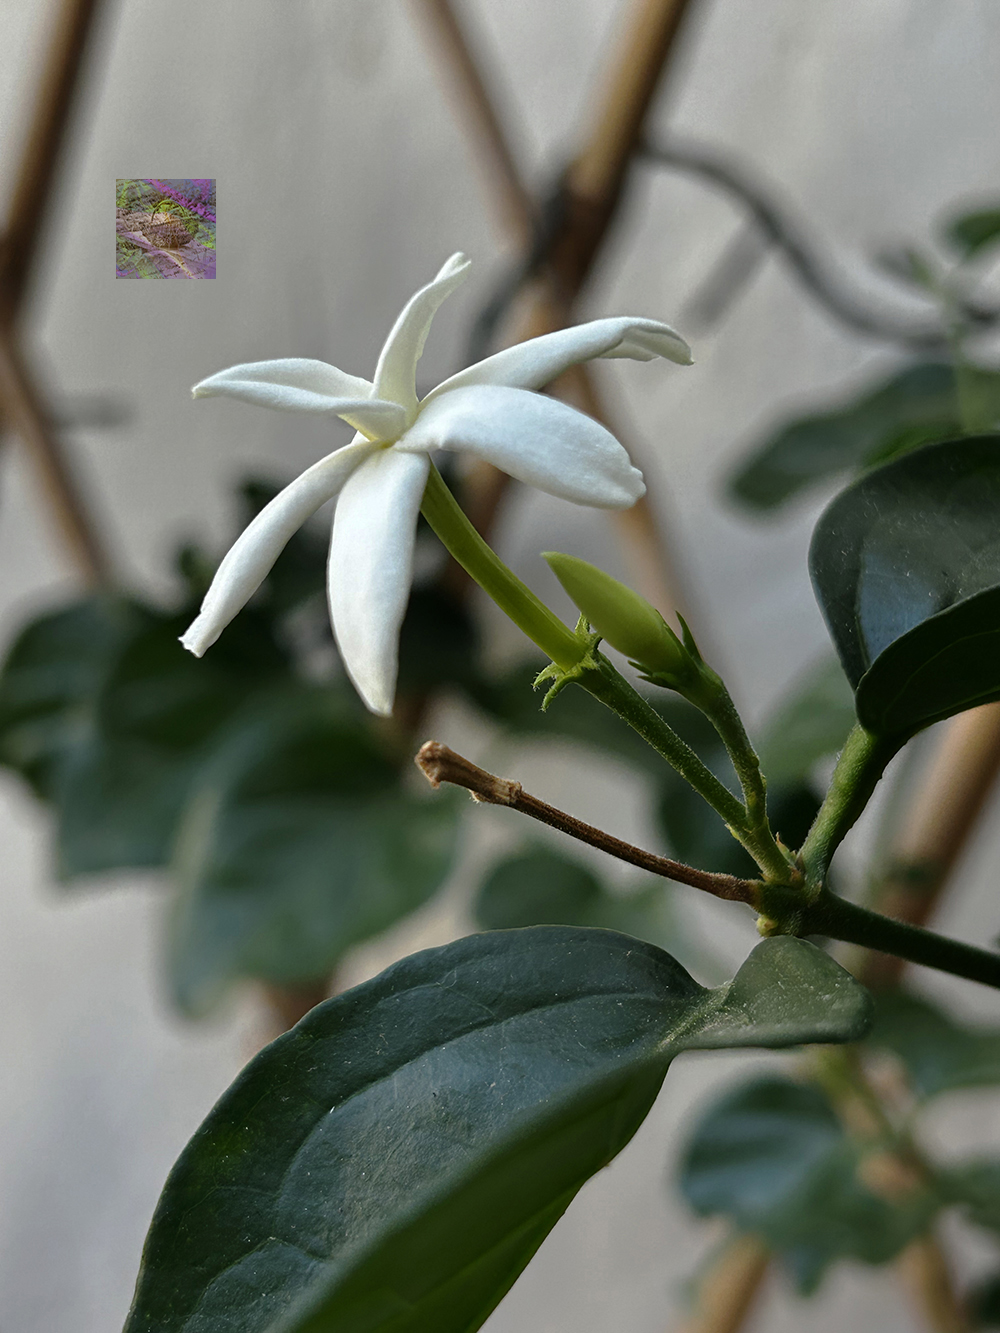 A Jasminum Sambac flower in bloom